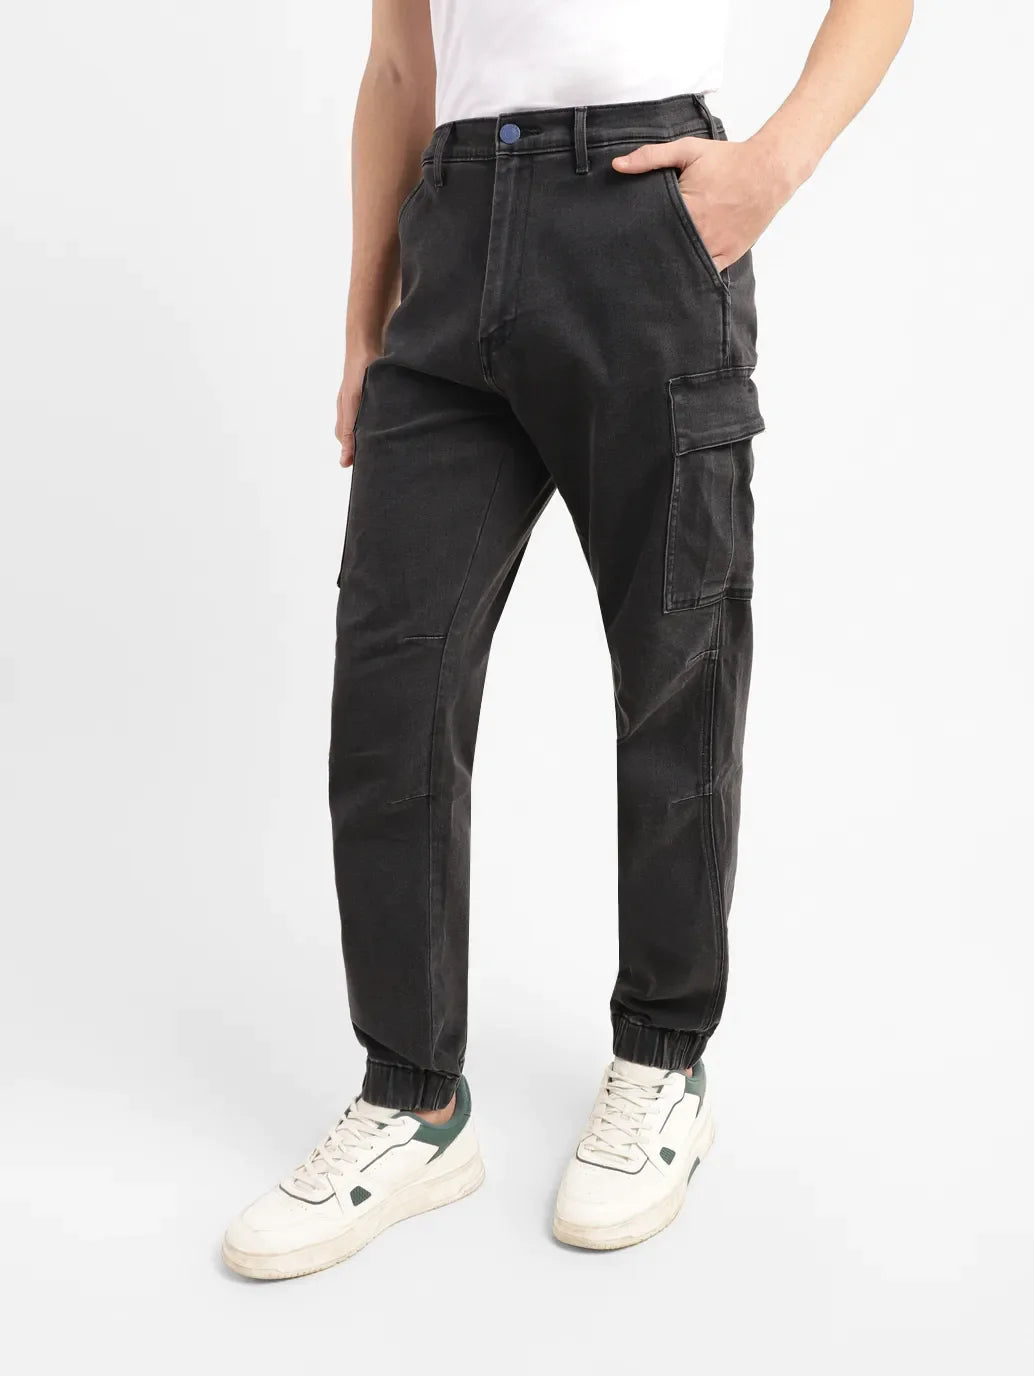 Men's Black Jogger Fit Jeans